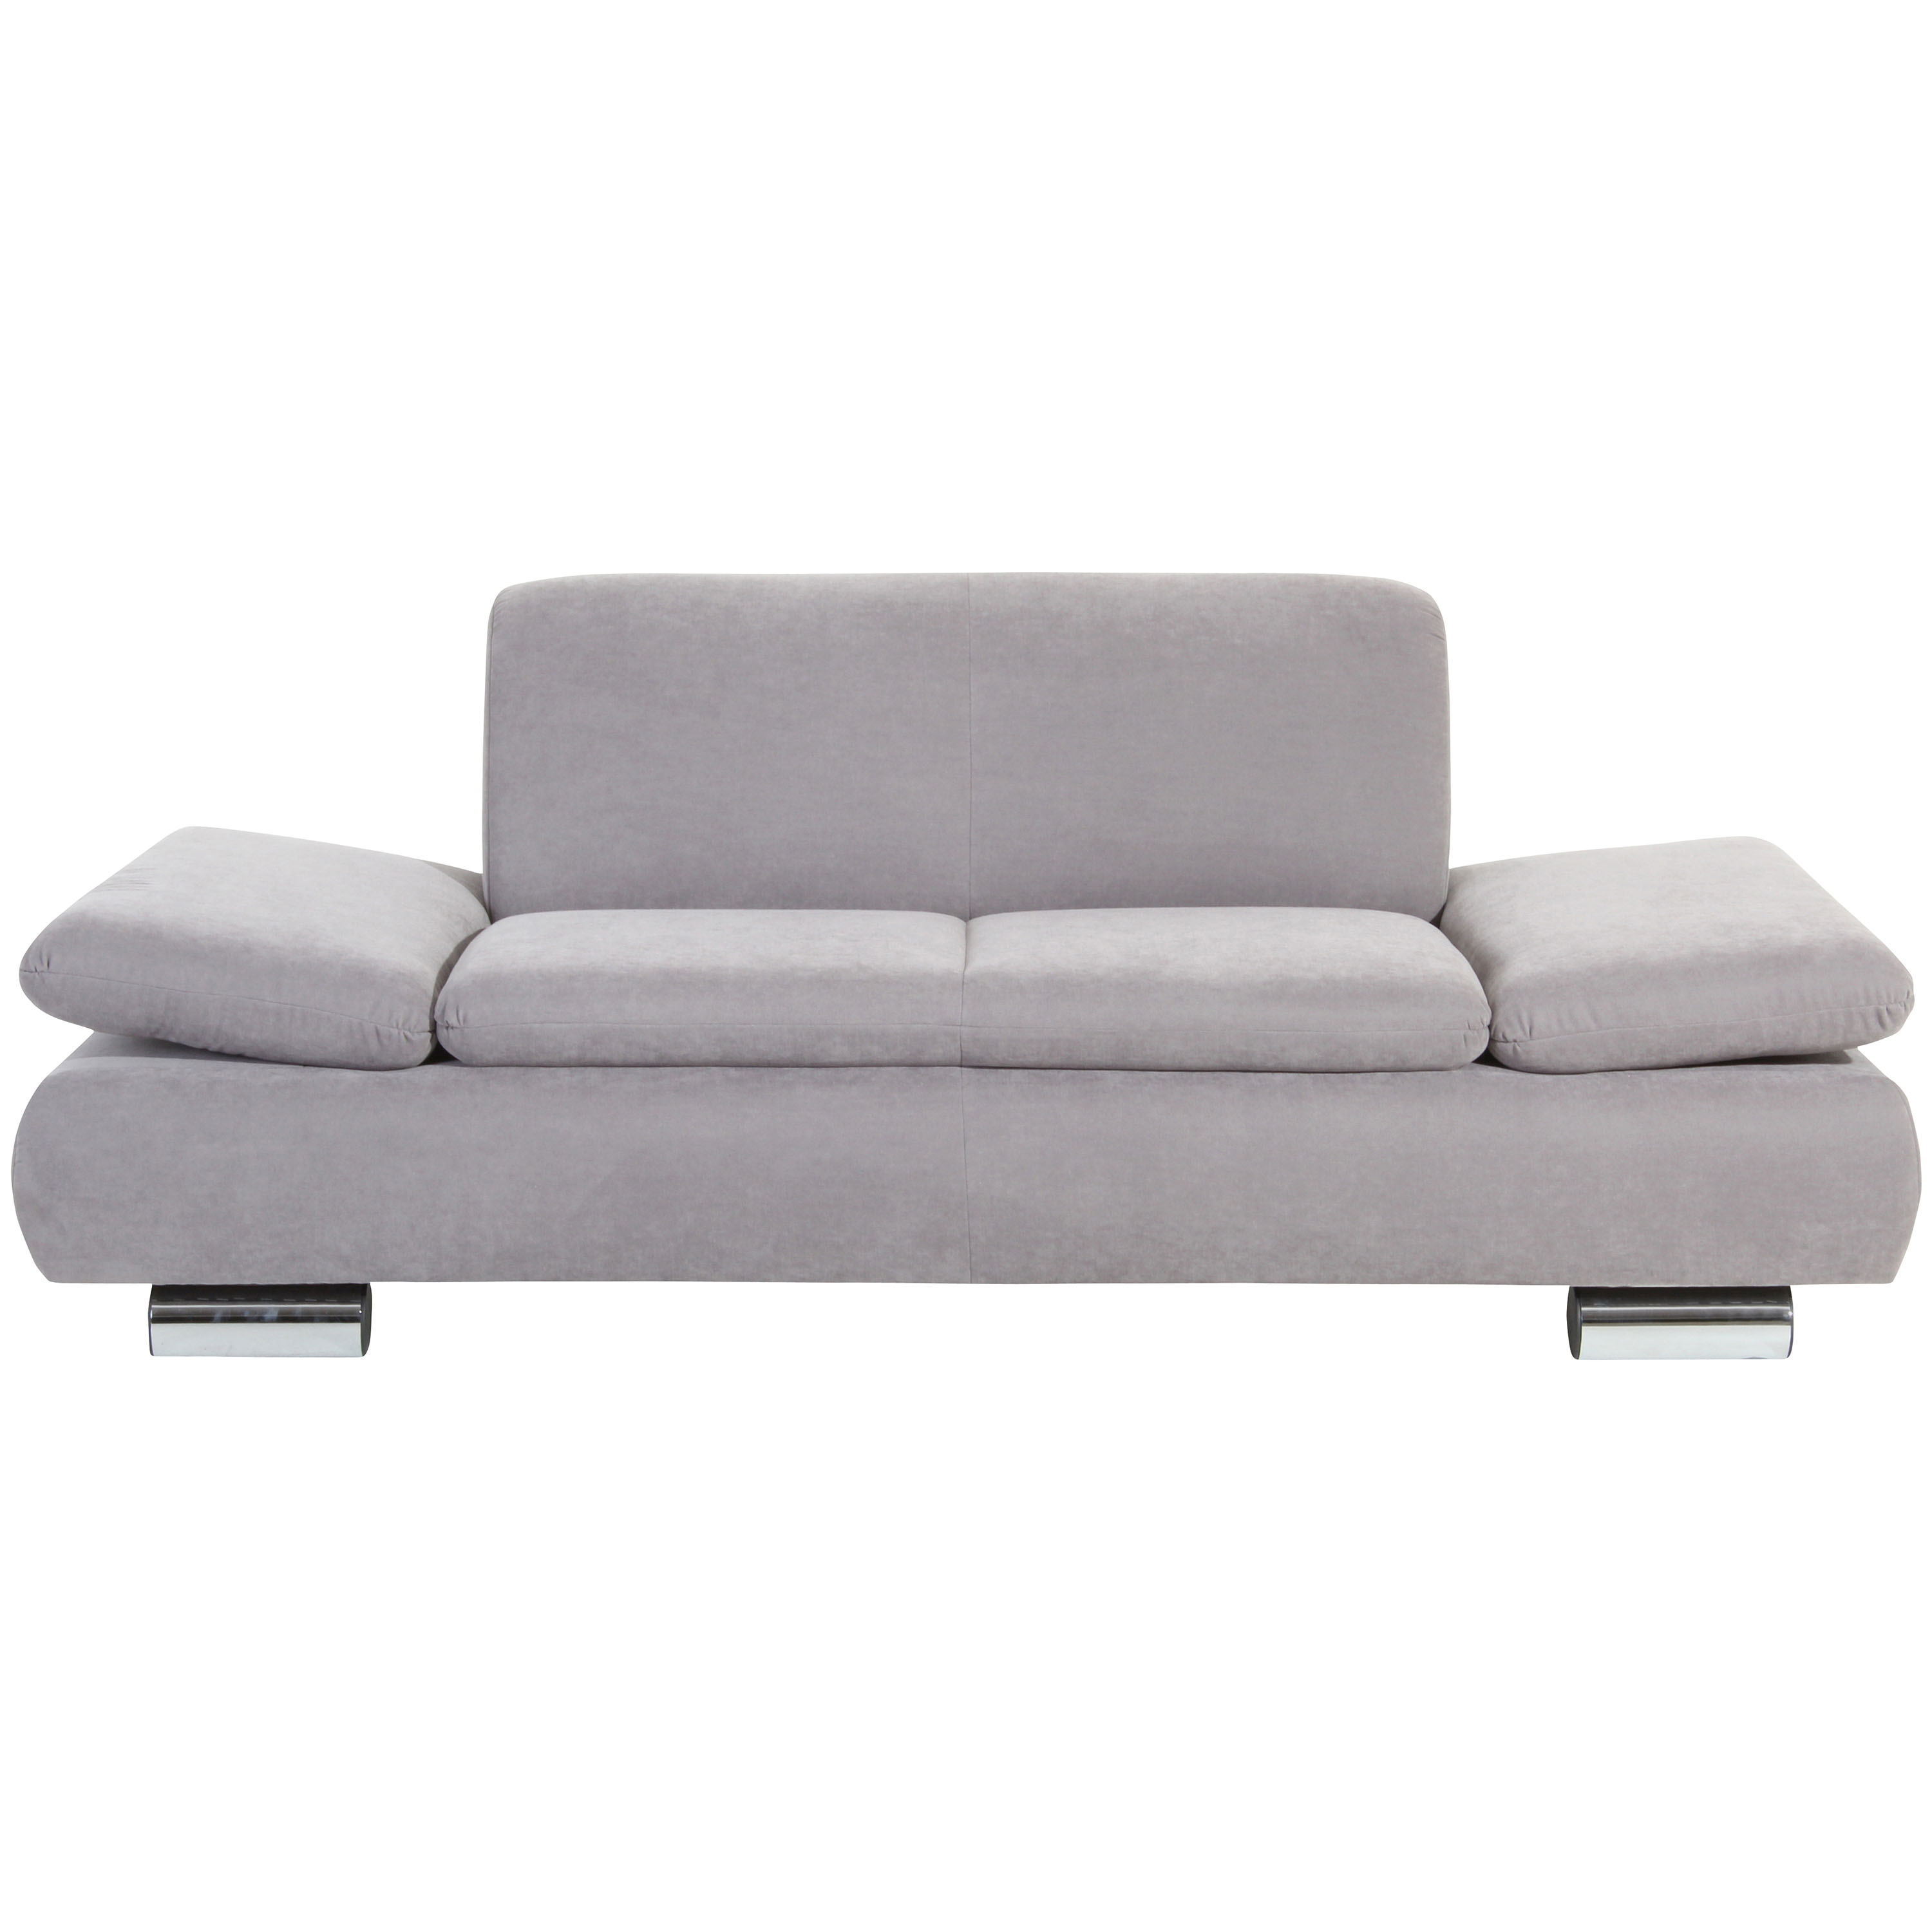 frontansicht von einem 2-sitzer sofa in silber mit verchromten metallfüssen